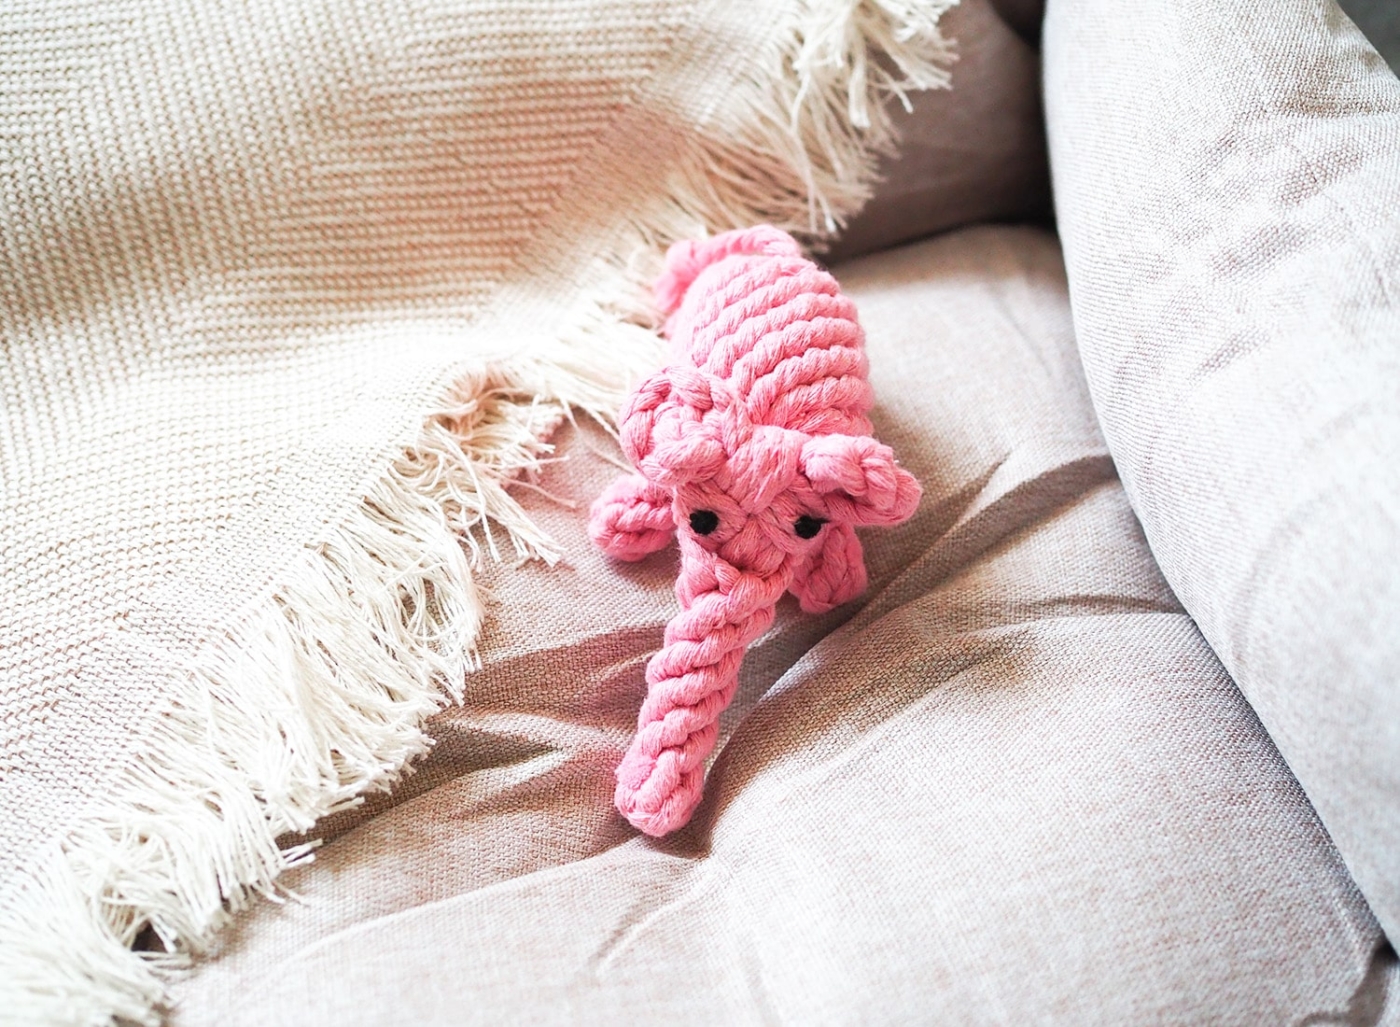 Hundespielzeug rosa Elefant aus natürlicher Baumwolle zum Reiniger der Hundezähne.